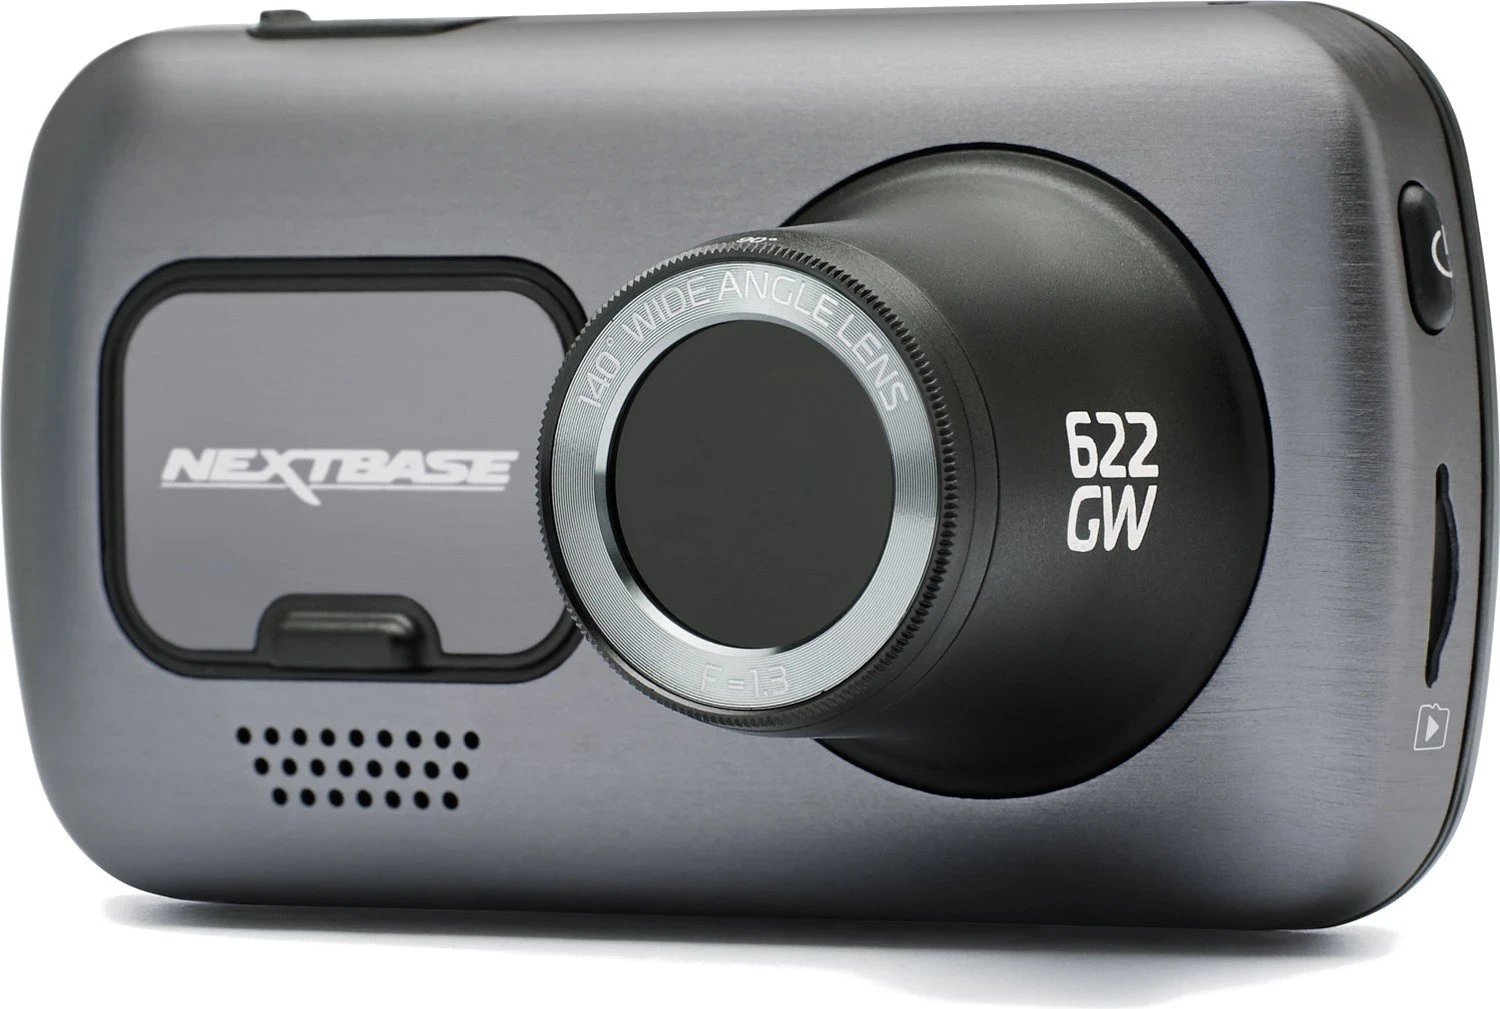 Kamera për makinë Nextbase 622GW, 4K, me GPS dhe stabilizim digjital të imazhit